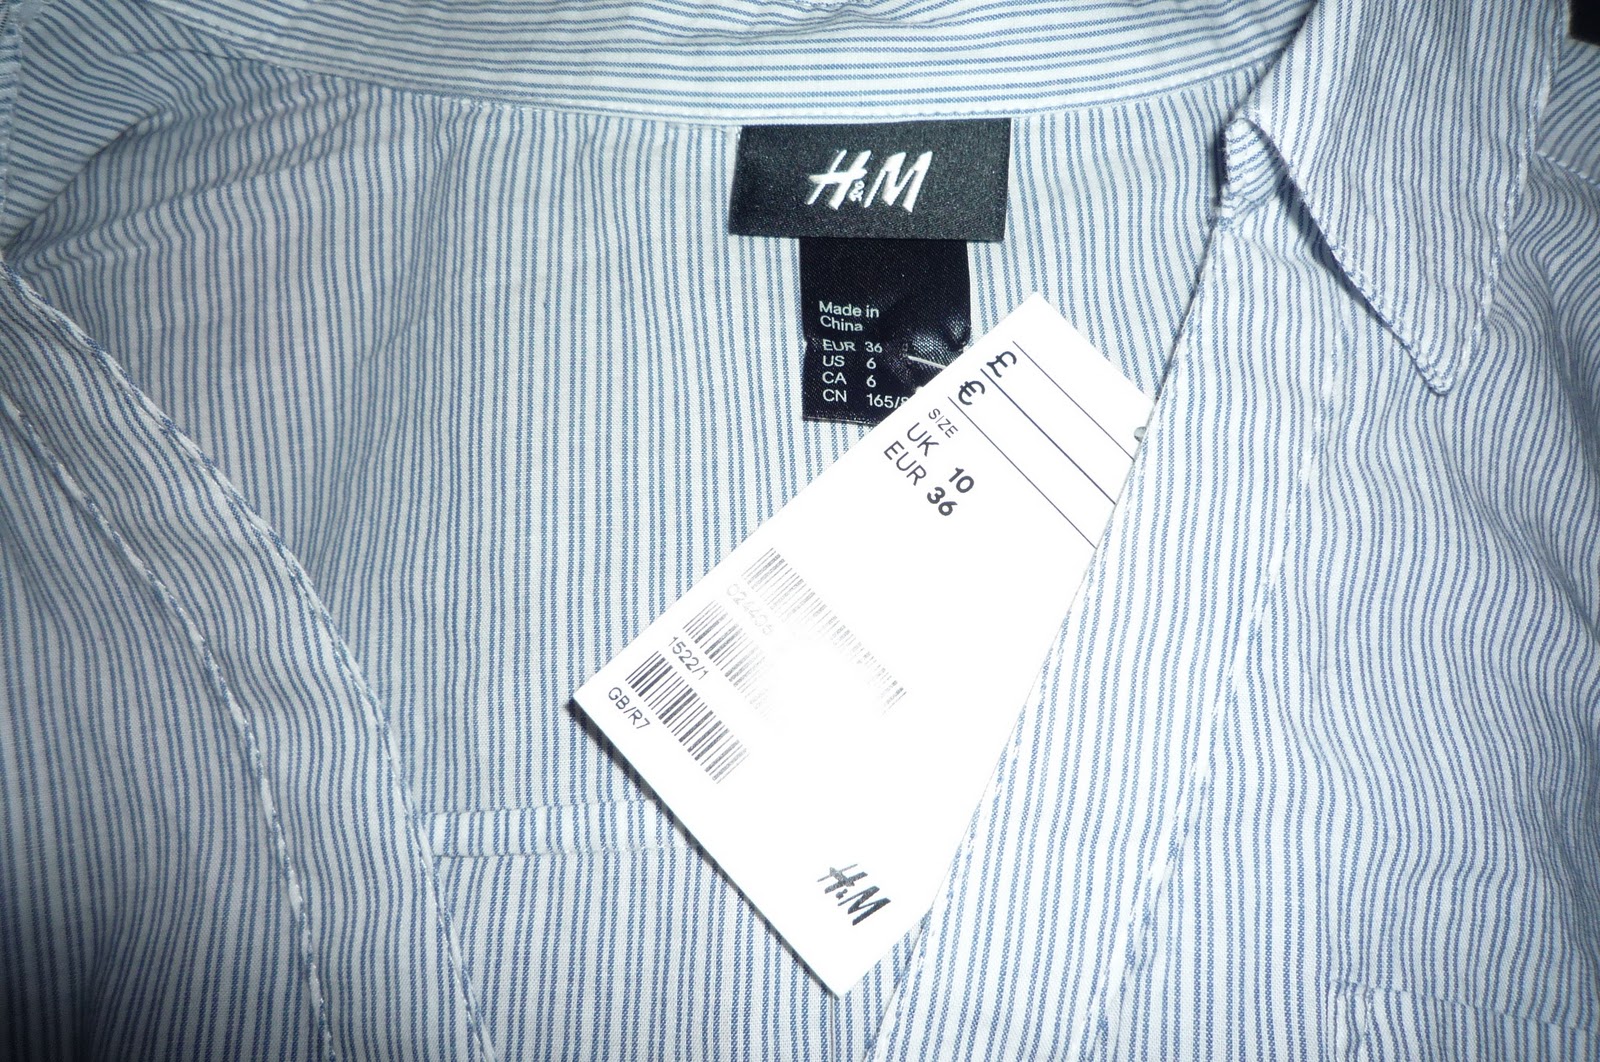 h and m tshirt dress